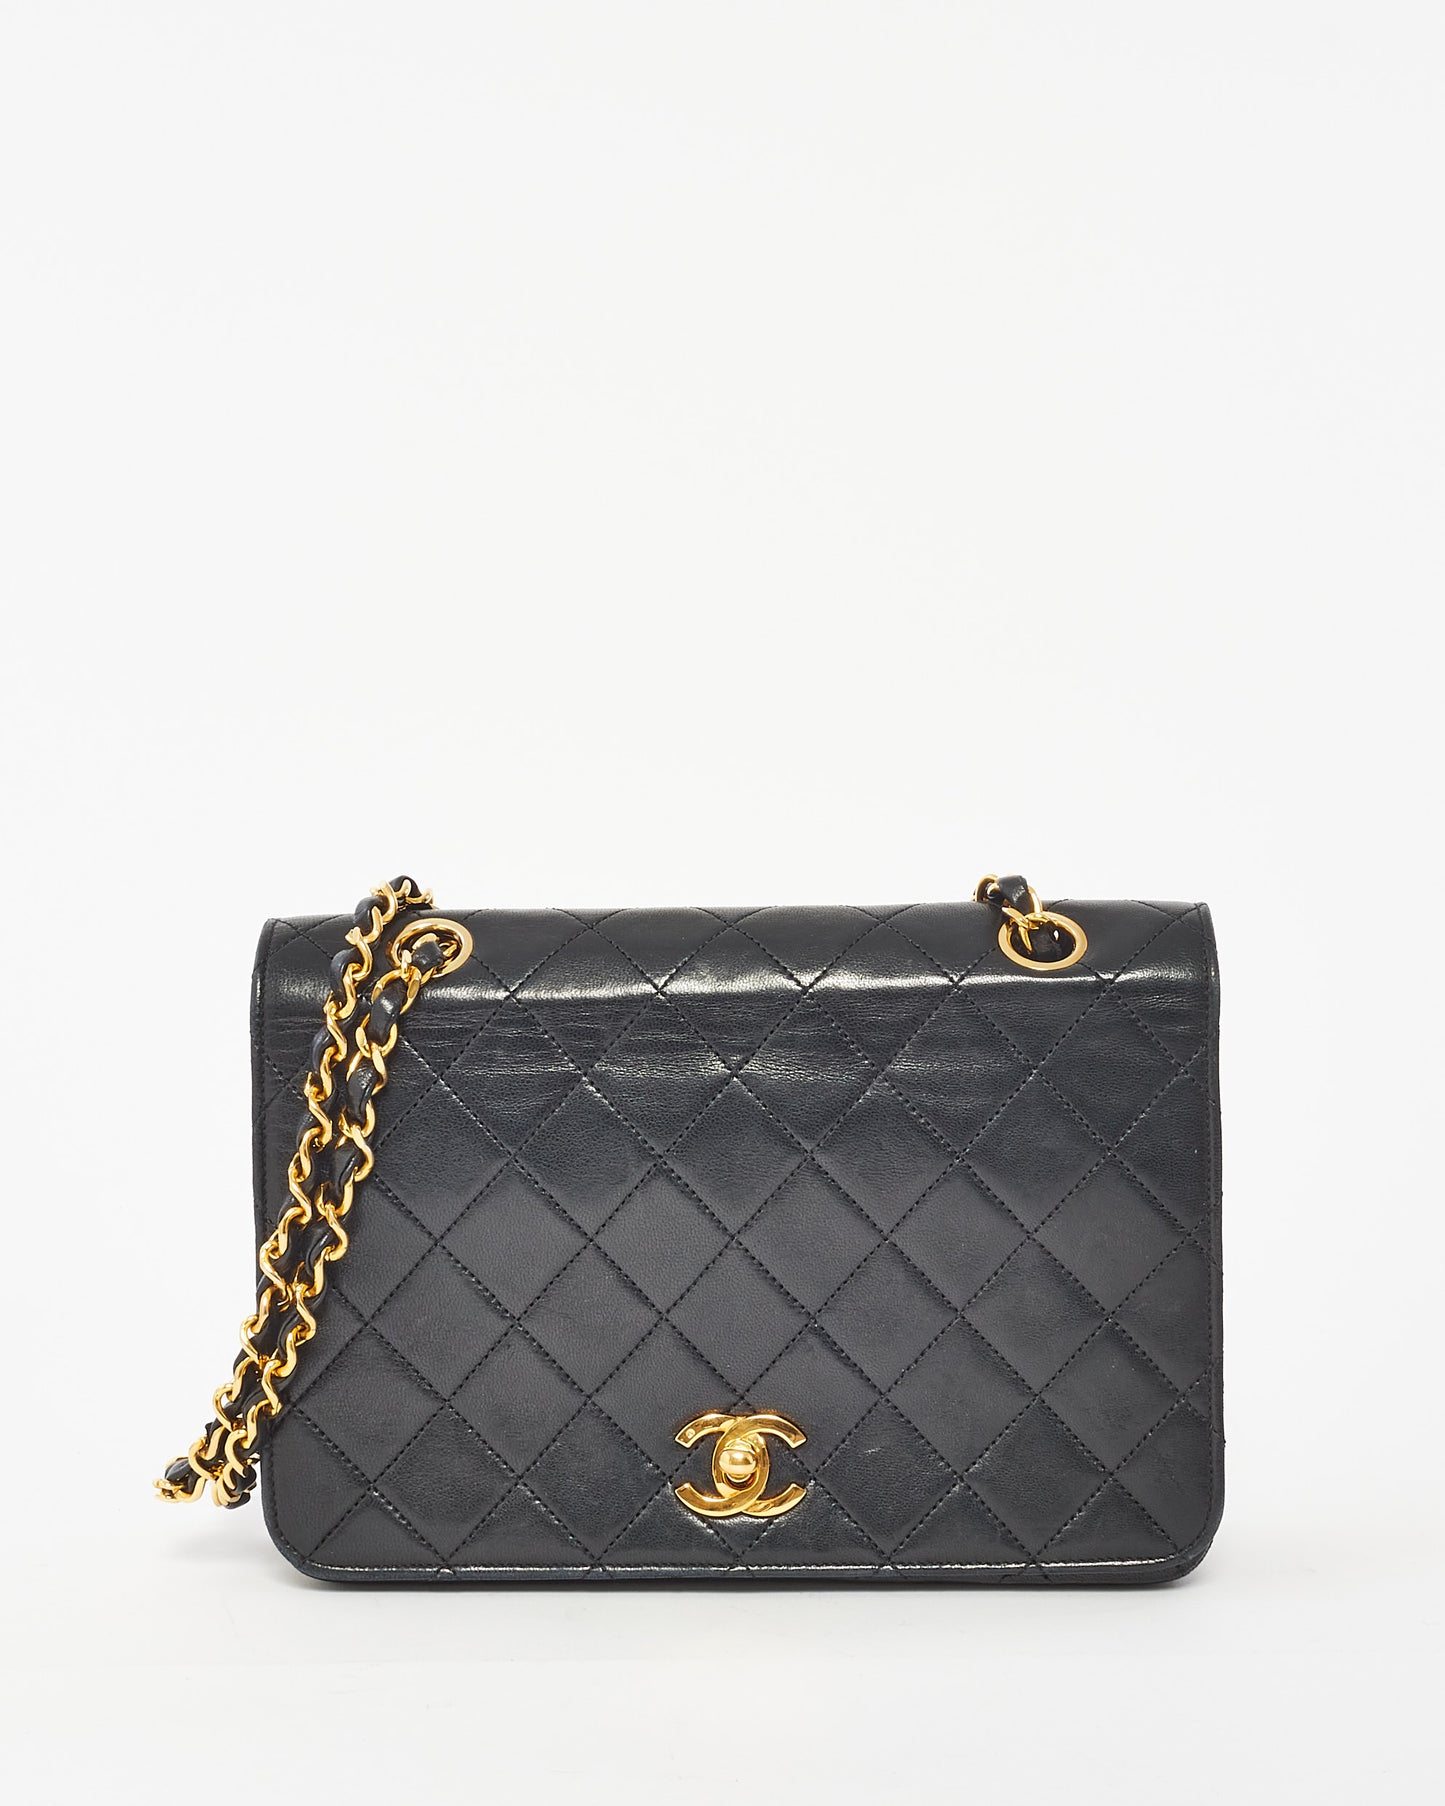 Chanel Vintage Black Leather Full Flap Bag